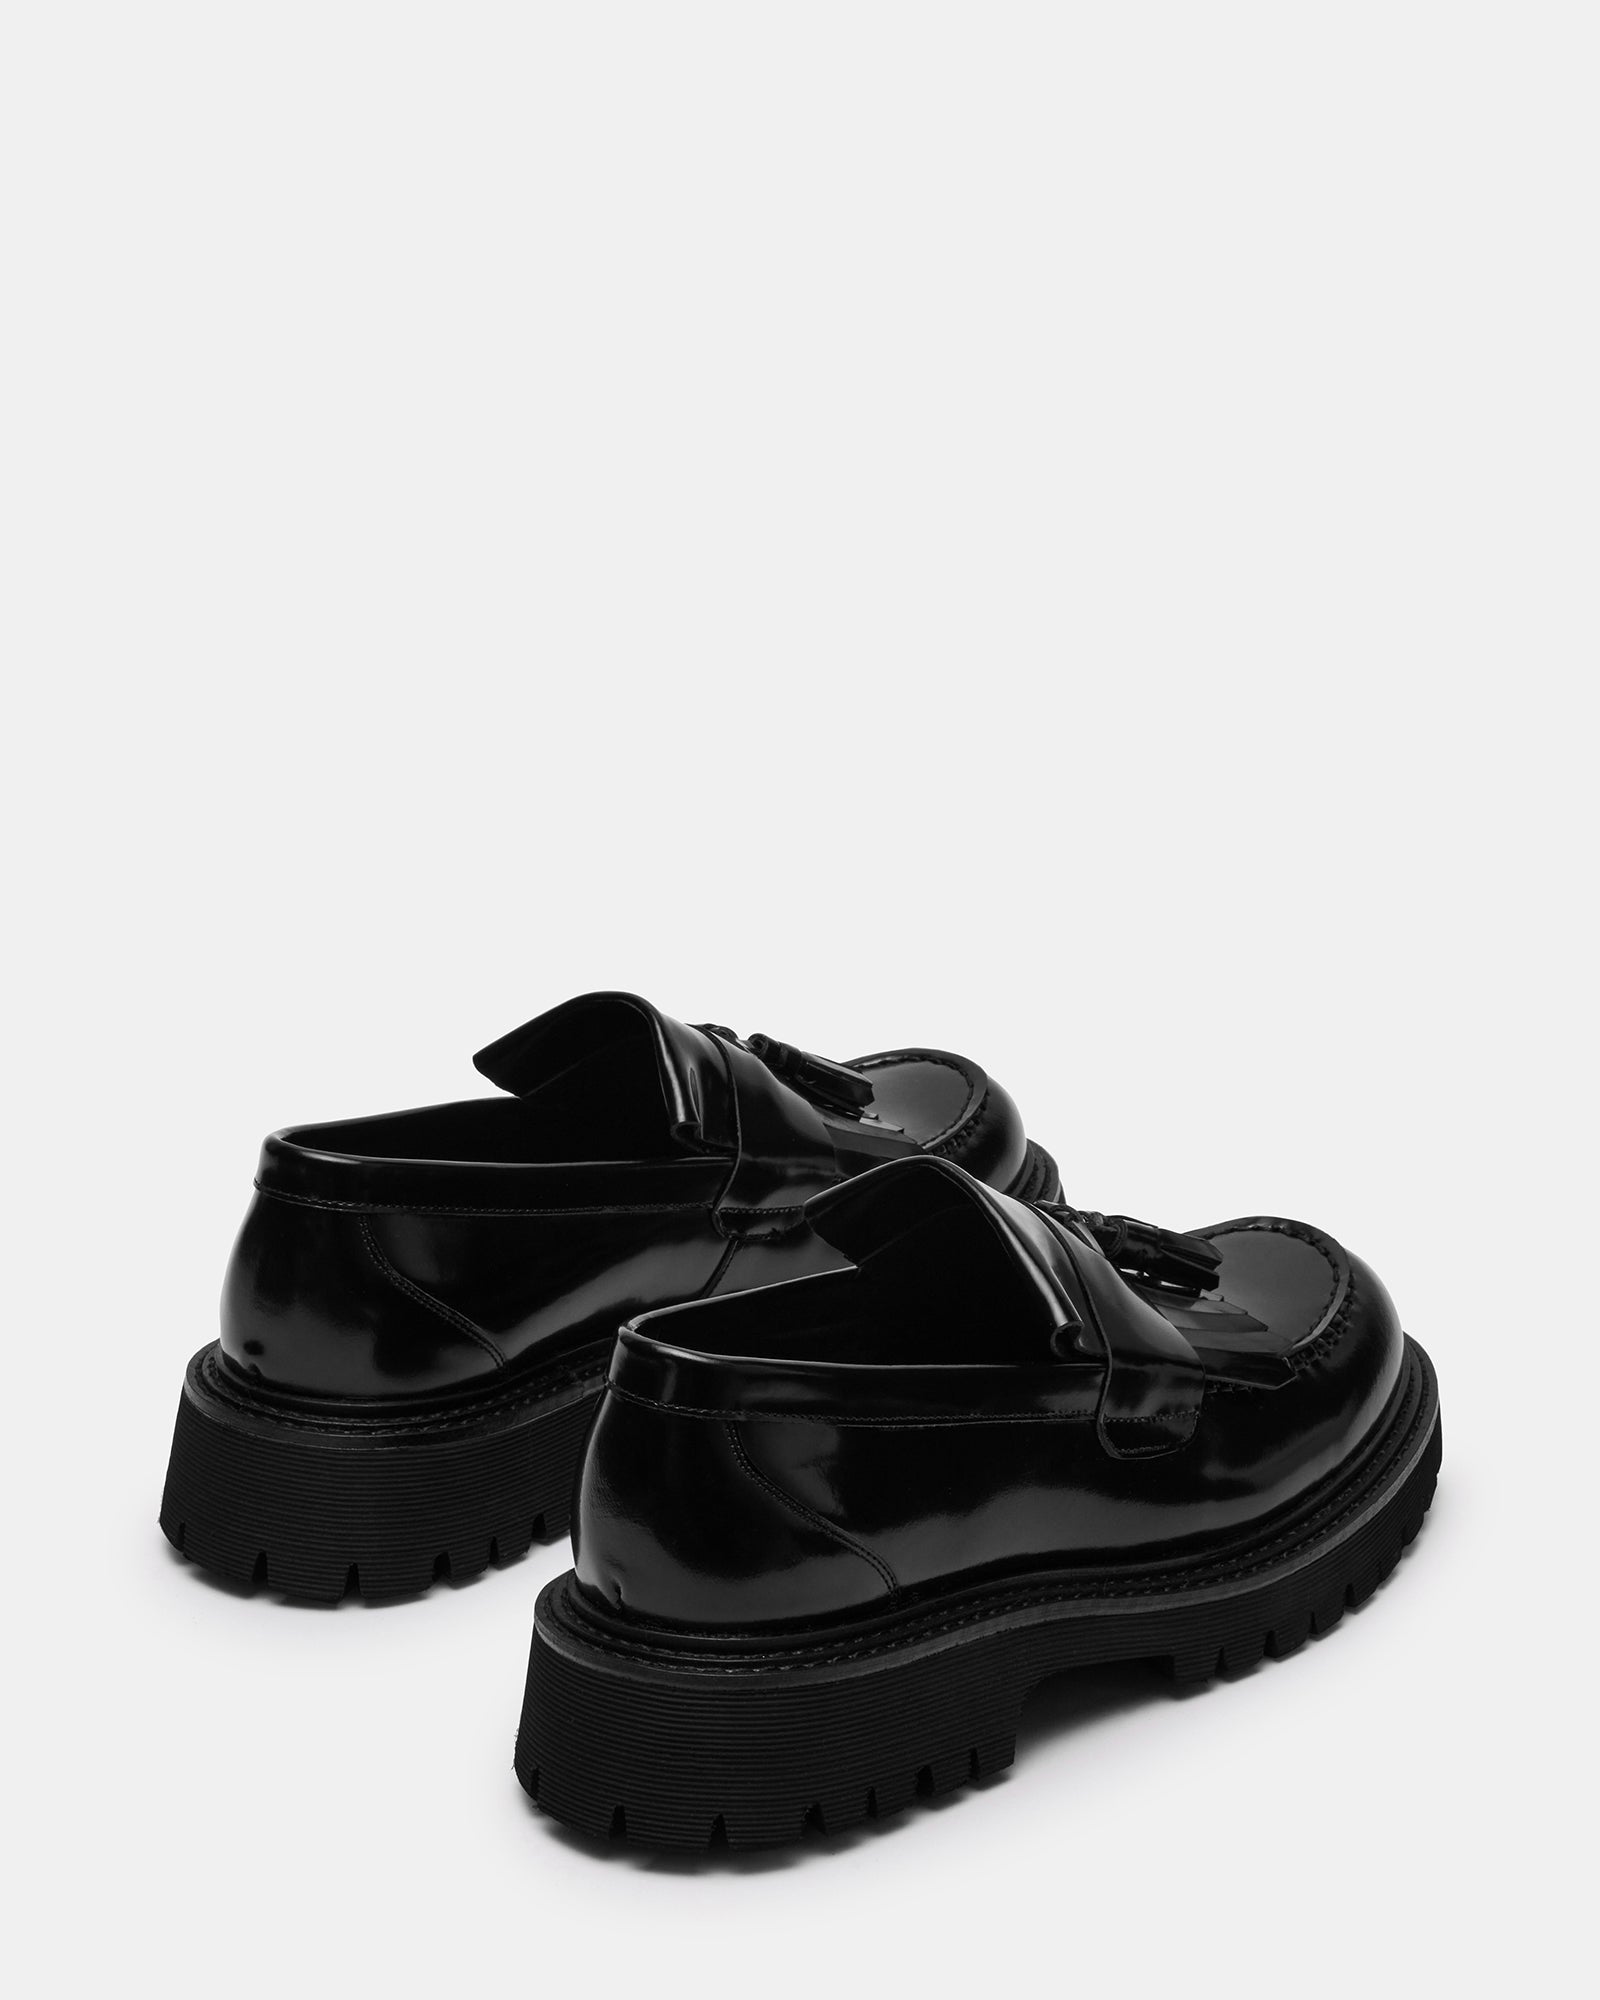 ZEV Black Box Lug Sole Dress Loafer | Men's Loafers – Steve Madden